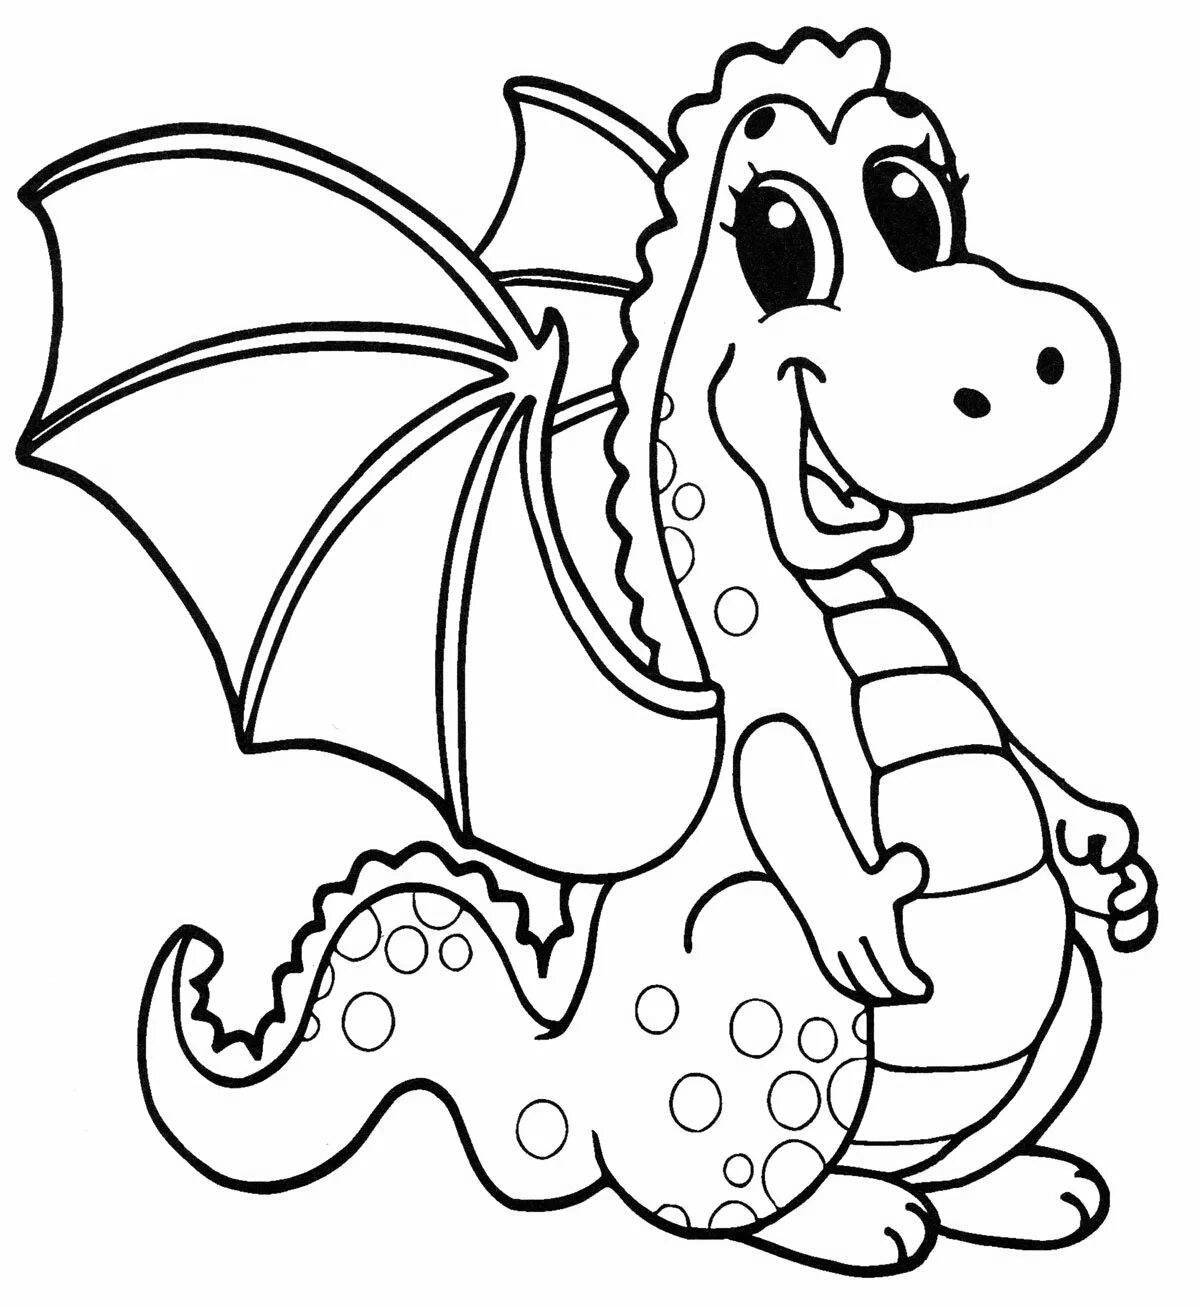 Великолепная раскраска драконы для детей 4-5 лет